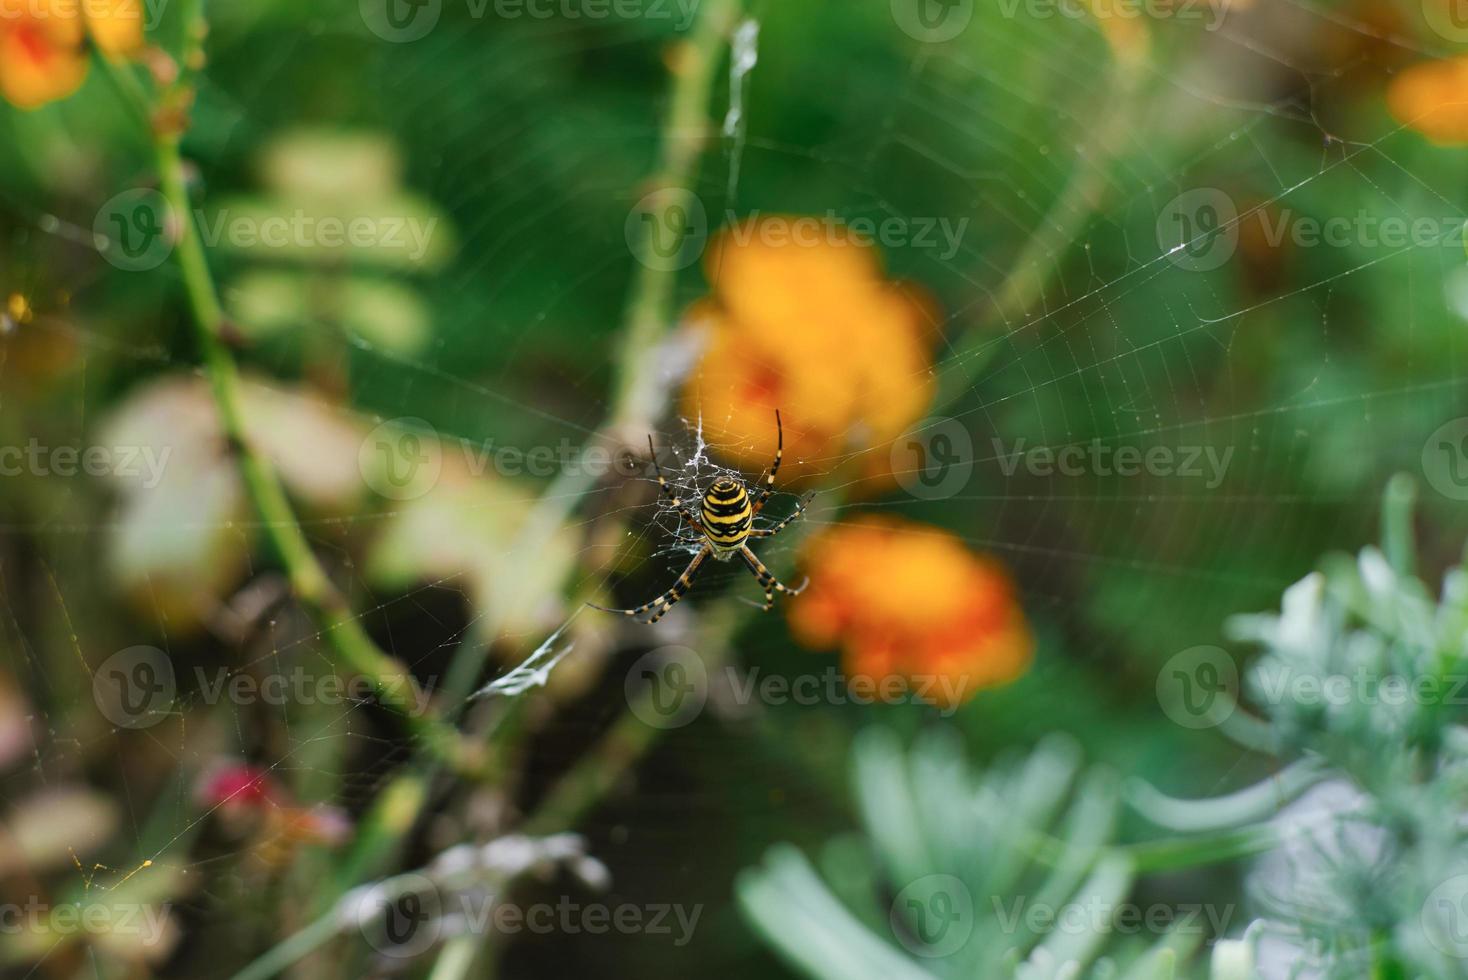 Spider argiope bruennichi on the web in the garden photo